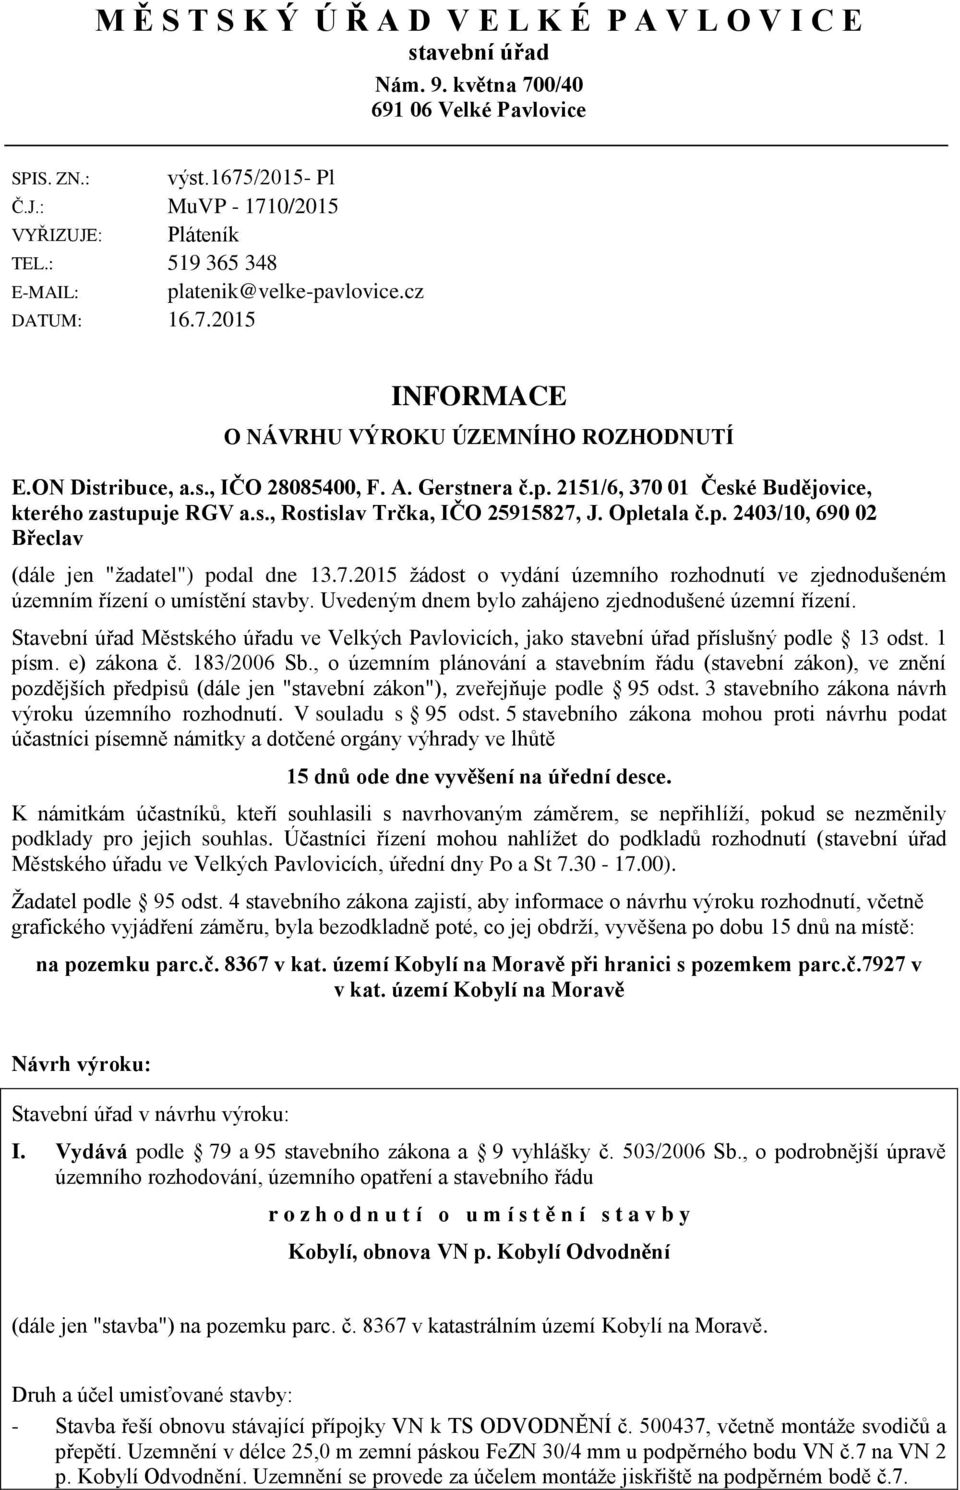 s., Rostislav Trčka, IČO 25915827, J. Opletala č.p. 2403/10, 690 02 Břeclav (dále jen "žadatel") podal dne 13.7.2015 žádost o vydání územního rozhodnutí ve zjednodušeném územním řízení o umístění stavby.